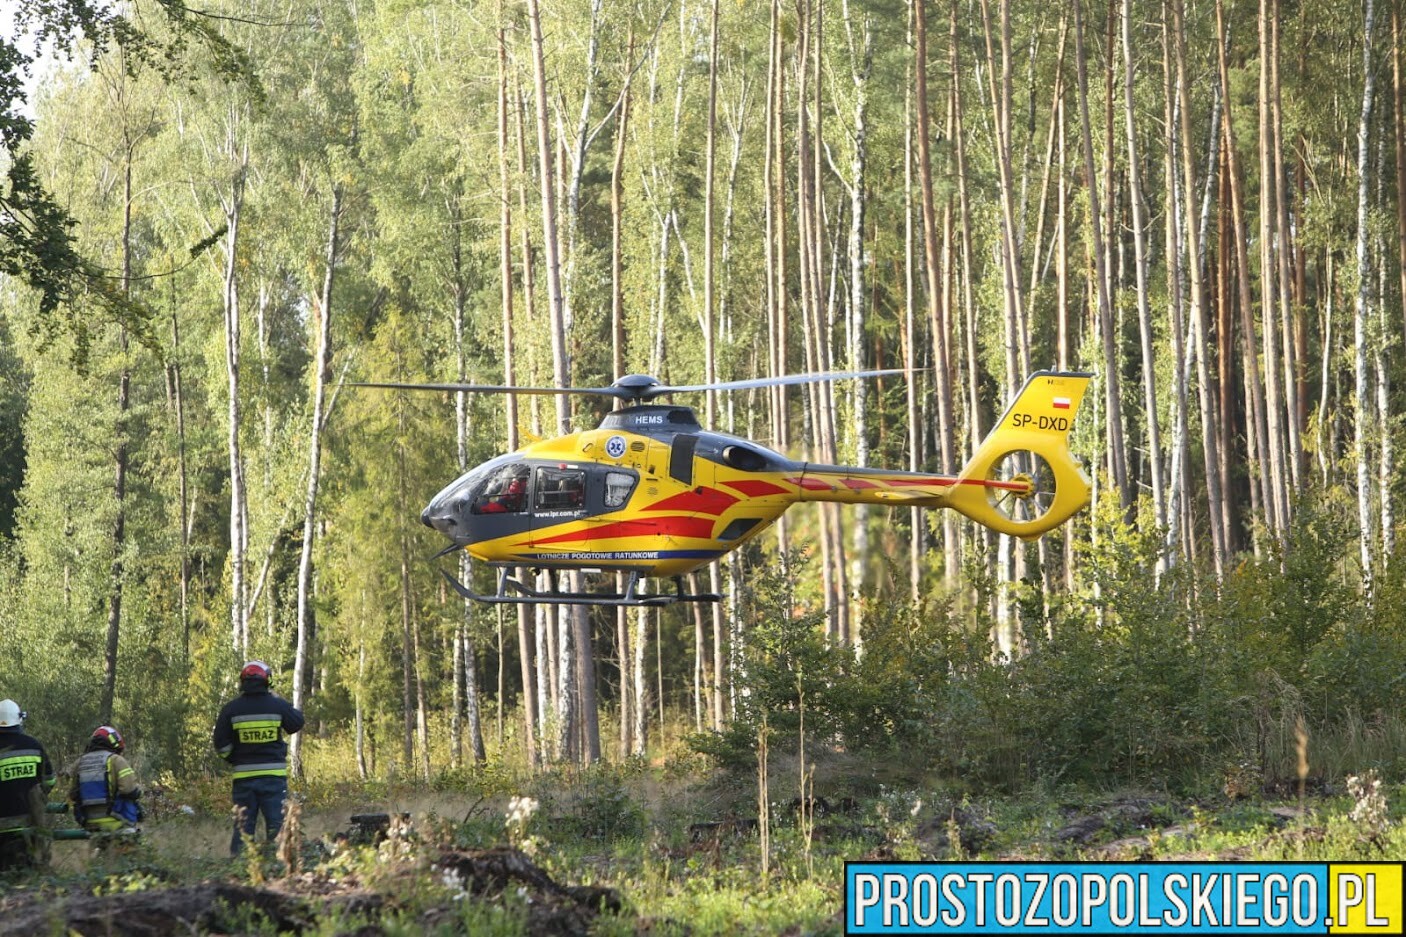 13-letni chłopiec został przygnieciony przez drzewo. LPR zabrał ranne dziecko do szpitala w Opolu.